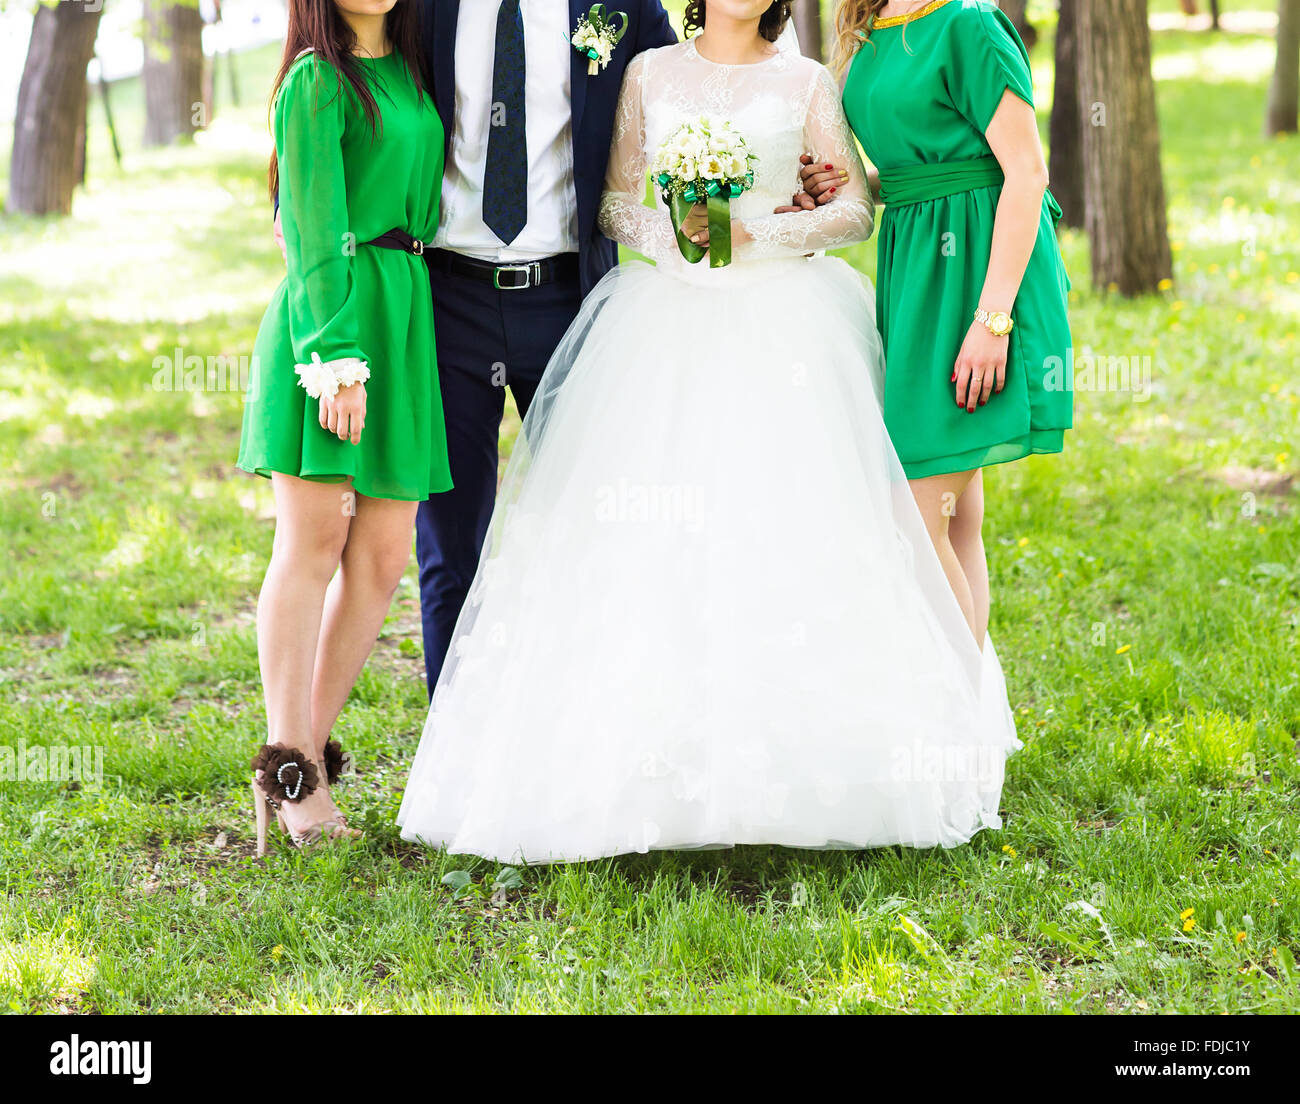 me quejo diferencia exégesis La novia y sus damas de honor vestidos de verde claro vestidos bridesmaid  Fotografía de stock - Alamy